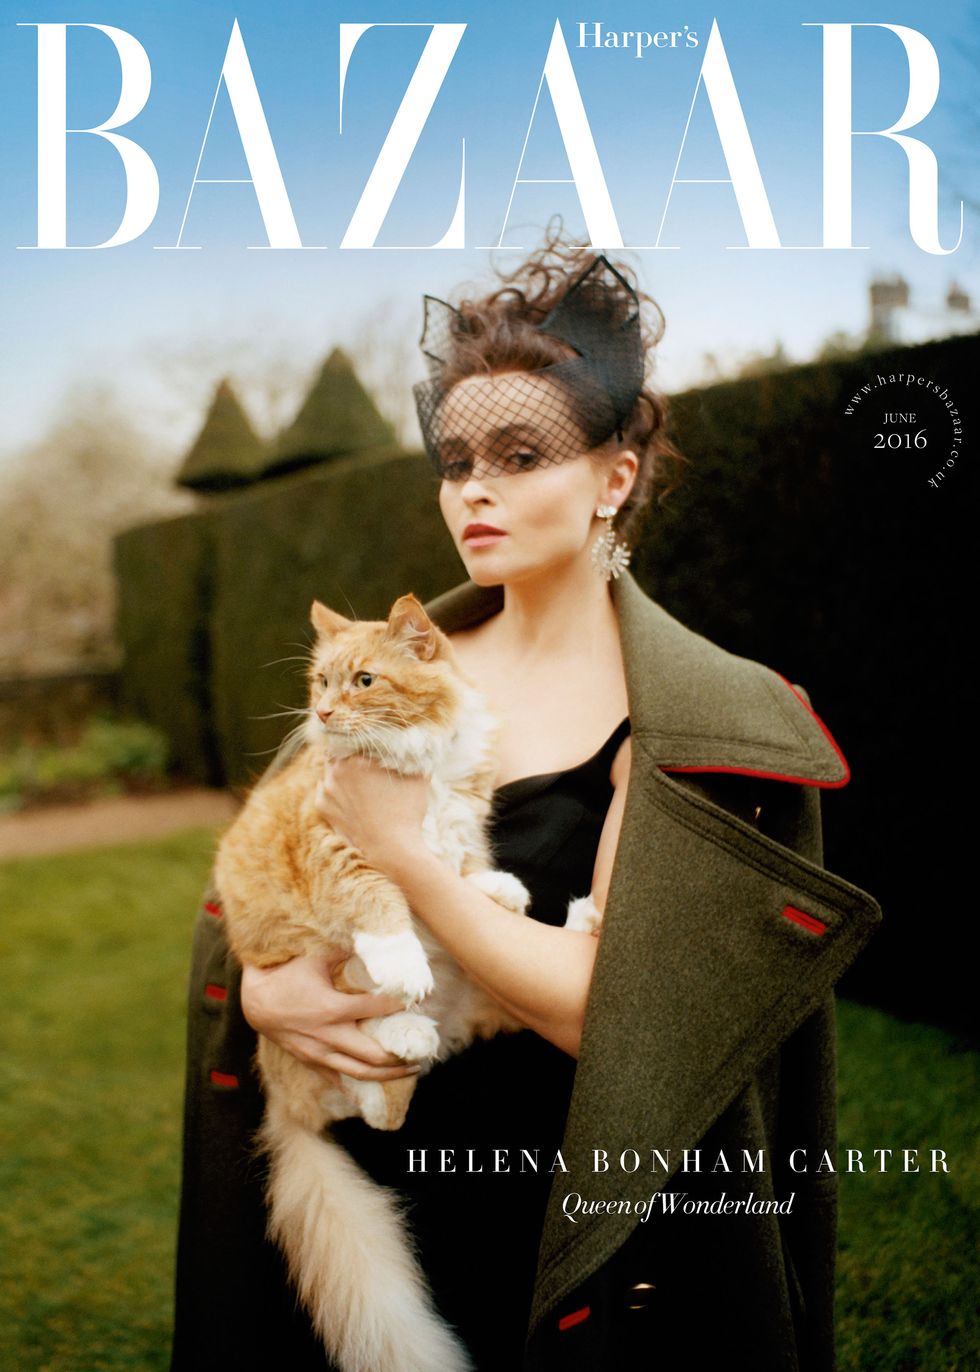 Helena Bonham Carter for Harper's Bazaar UK June 2016